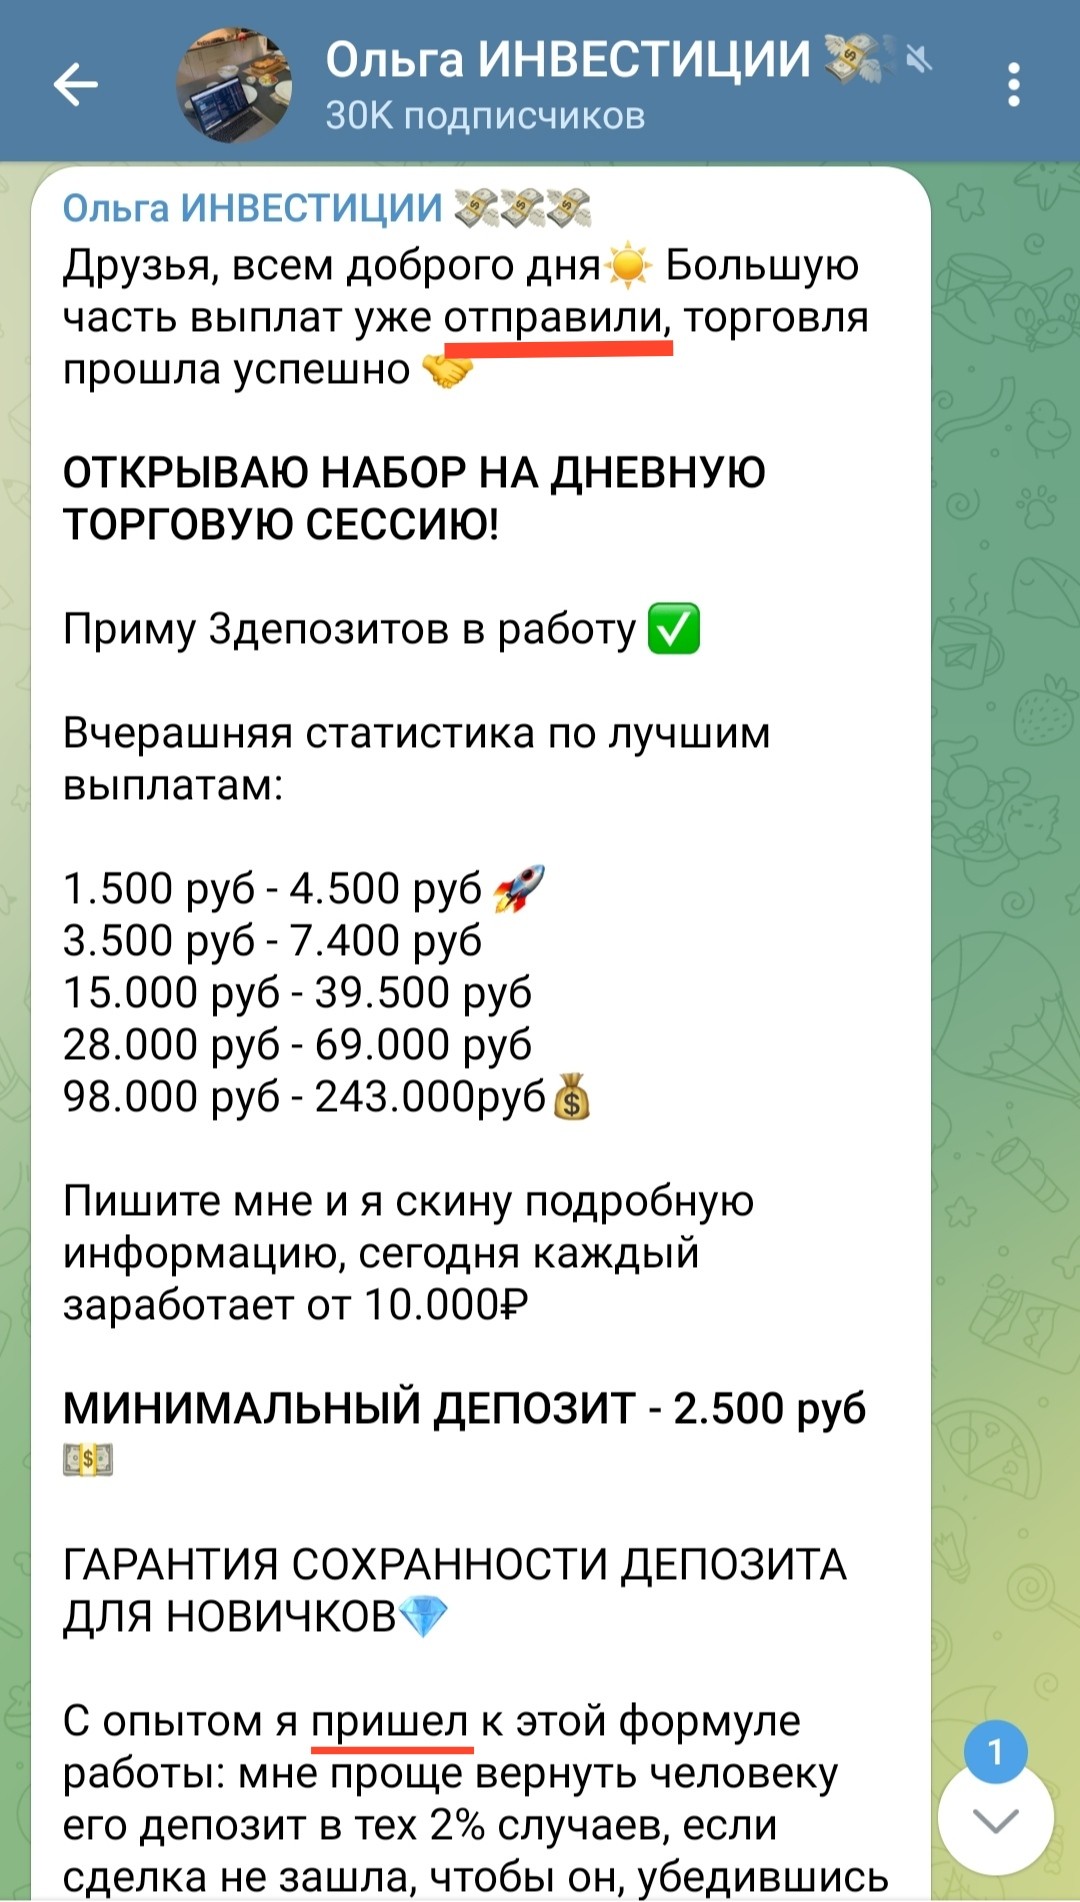 Телеграм проект Ольга Инвестиции условия инвестирования